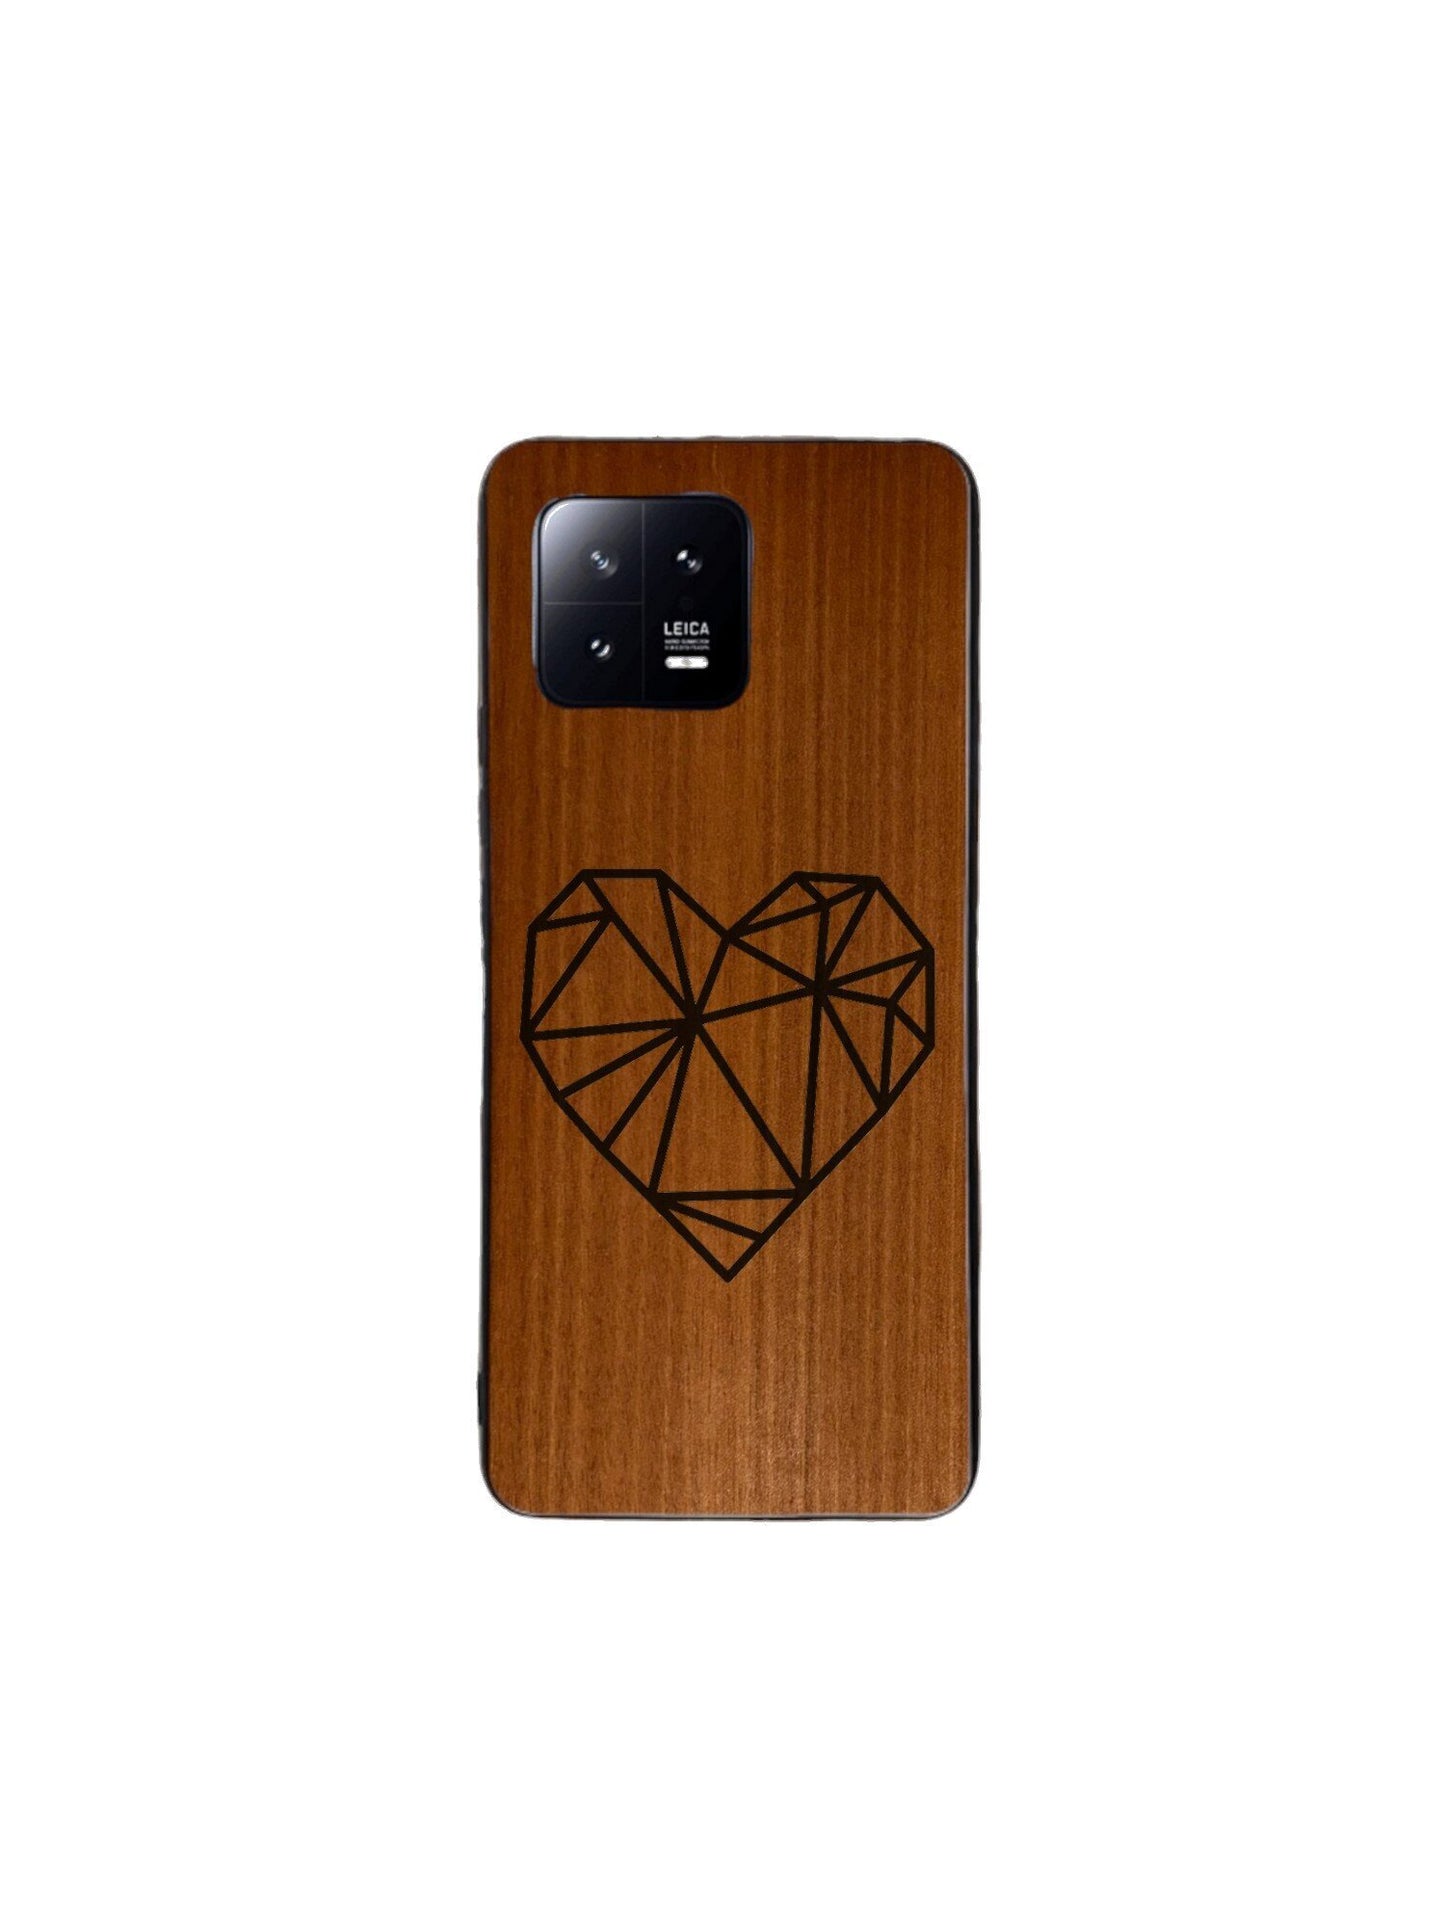 Xiaomi Mi Case - Heart